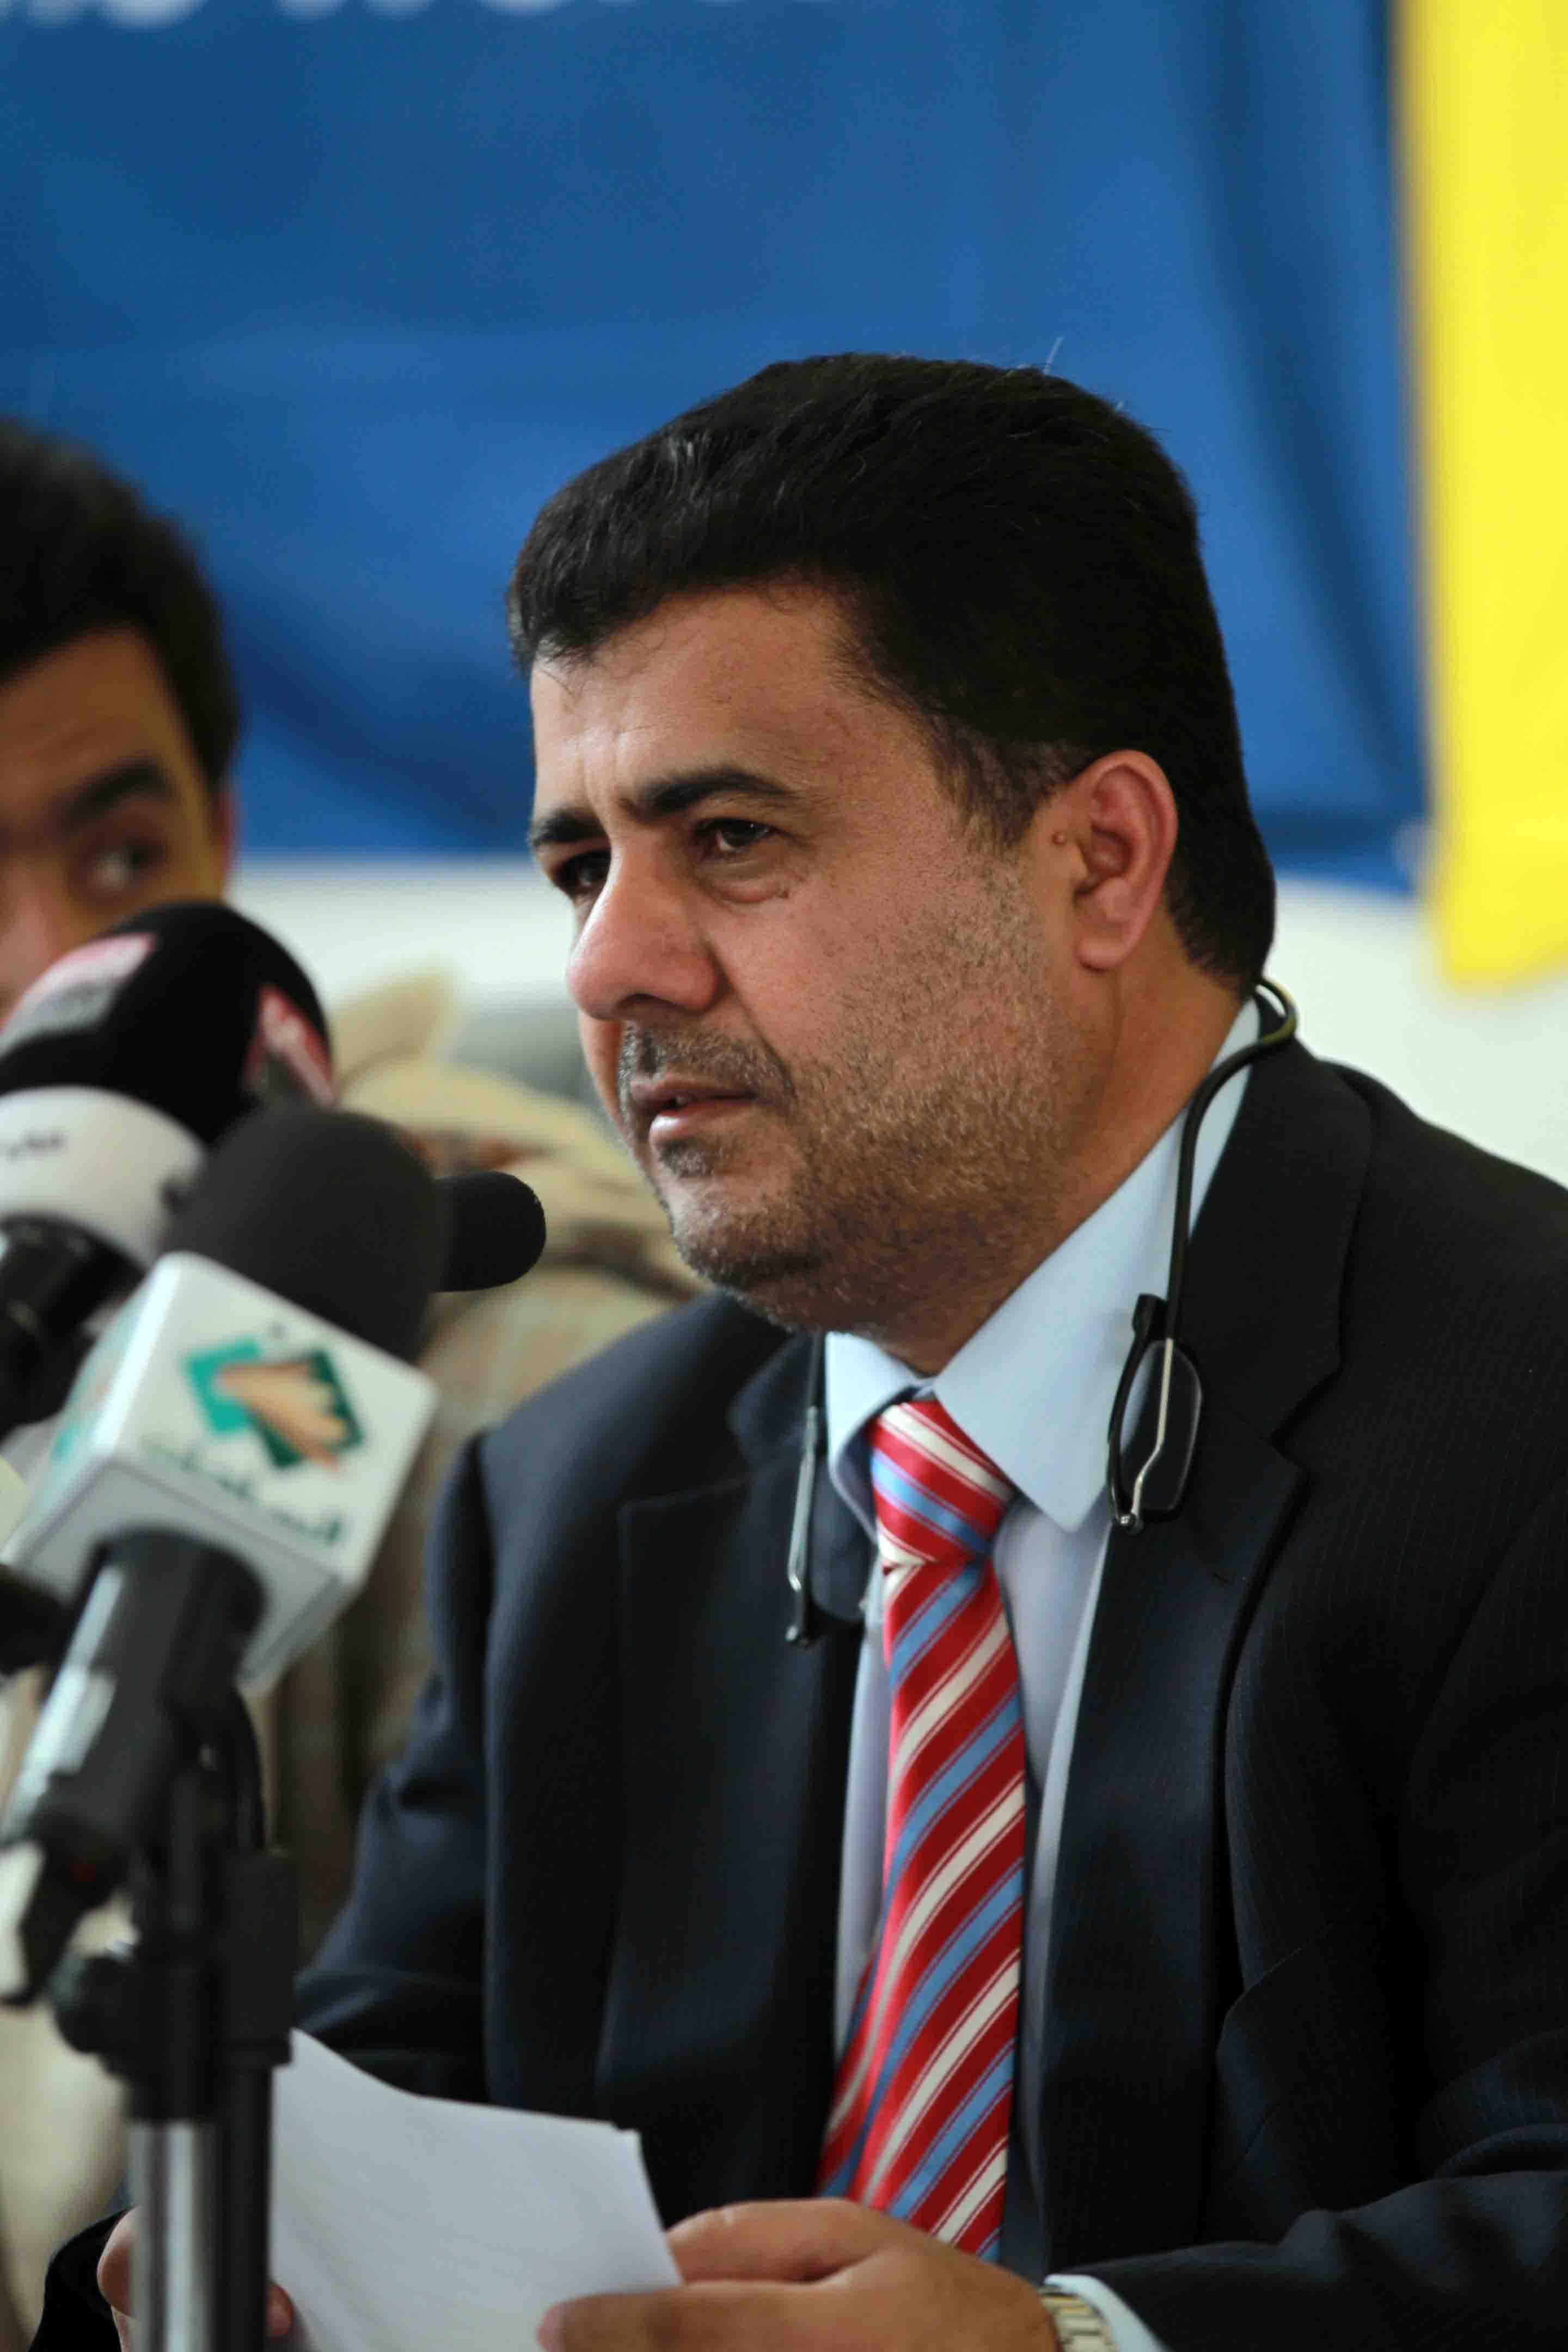 العيسي يخوض انتخابات اللجنة التنفيذية بالاتحاد العربي لكرة القدم